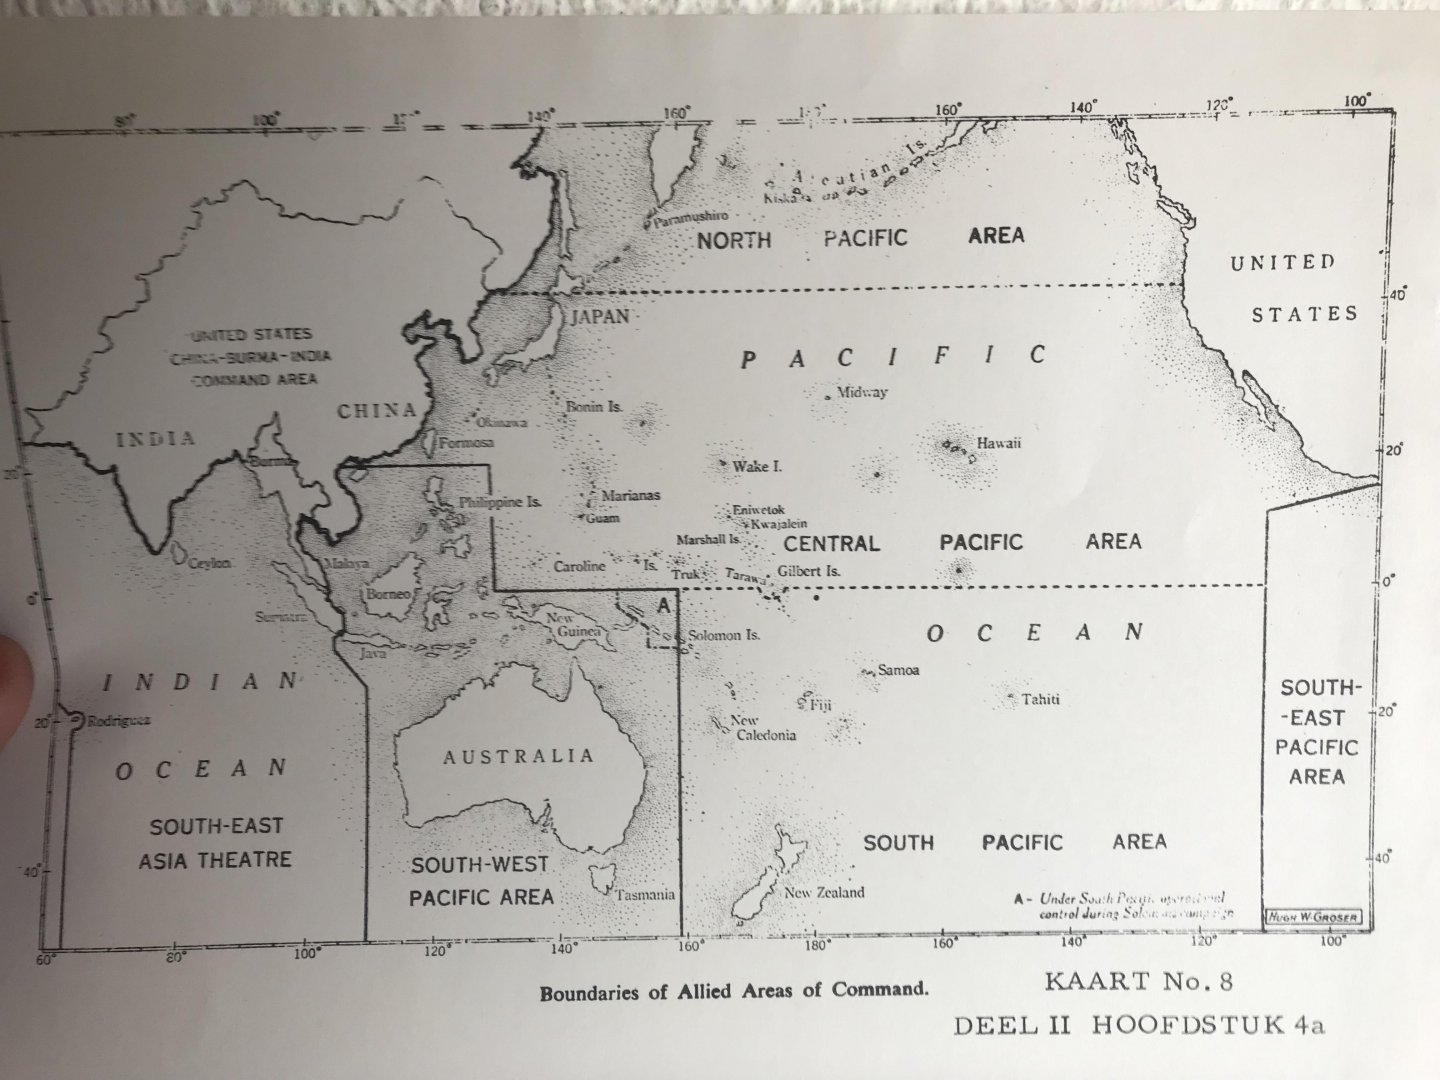 MARINESTAF - Acties , Nederlandse Onderzeeboten in South East Asia 1942-1945 , 2 delen met 57 bijlagen en kaarten